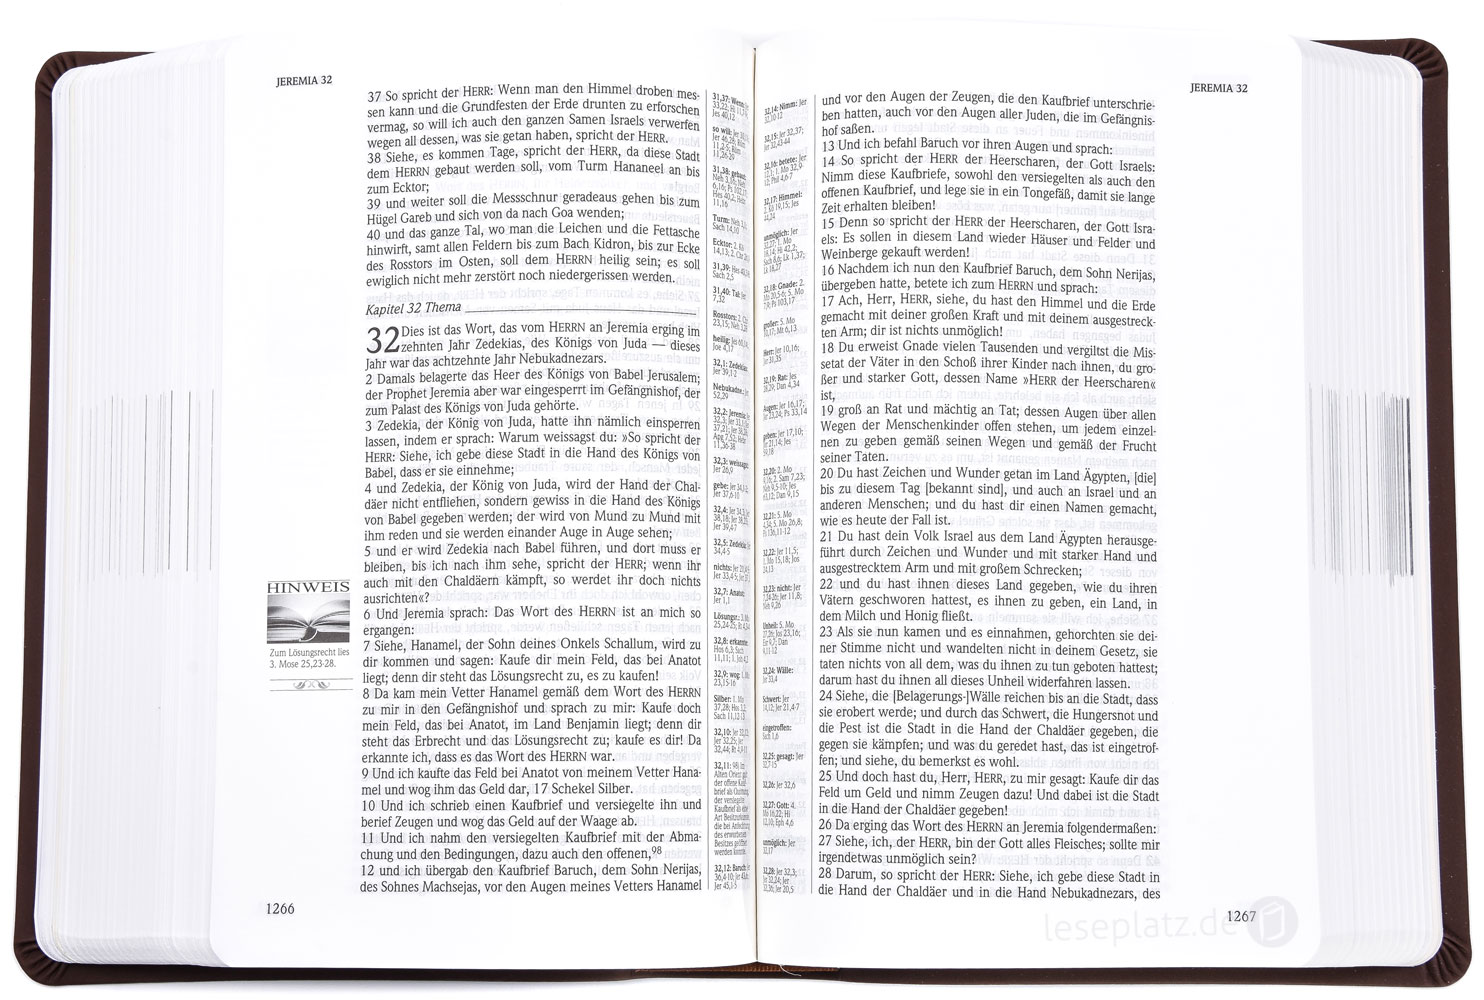 Die Neue Induktive Studienbibel - NISB (Schlachter 2000)